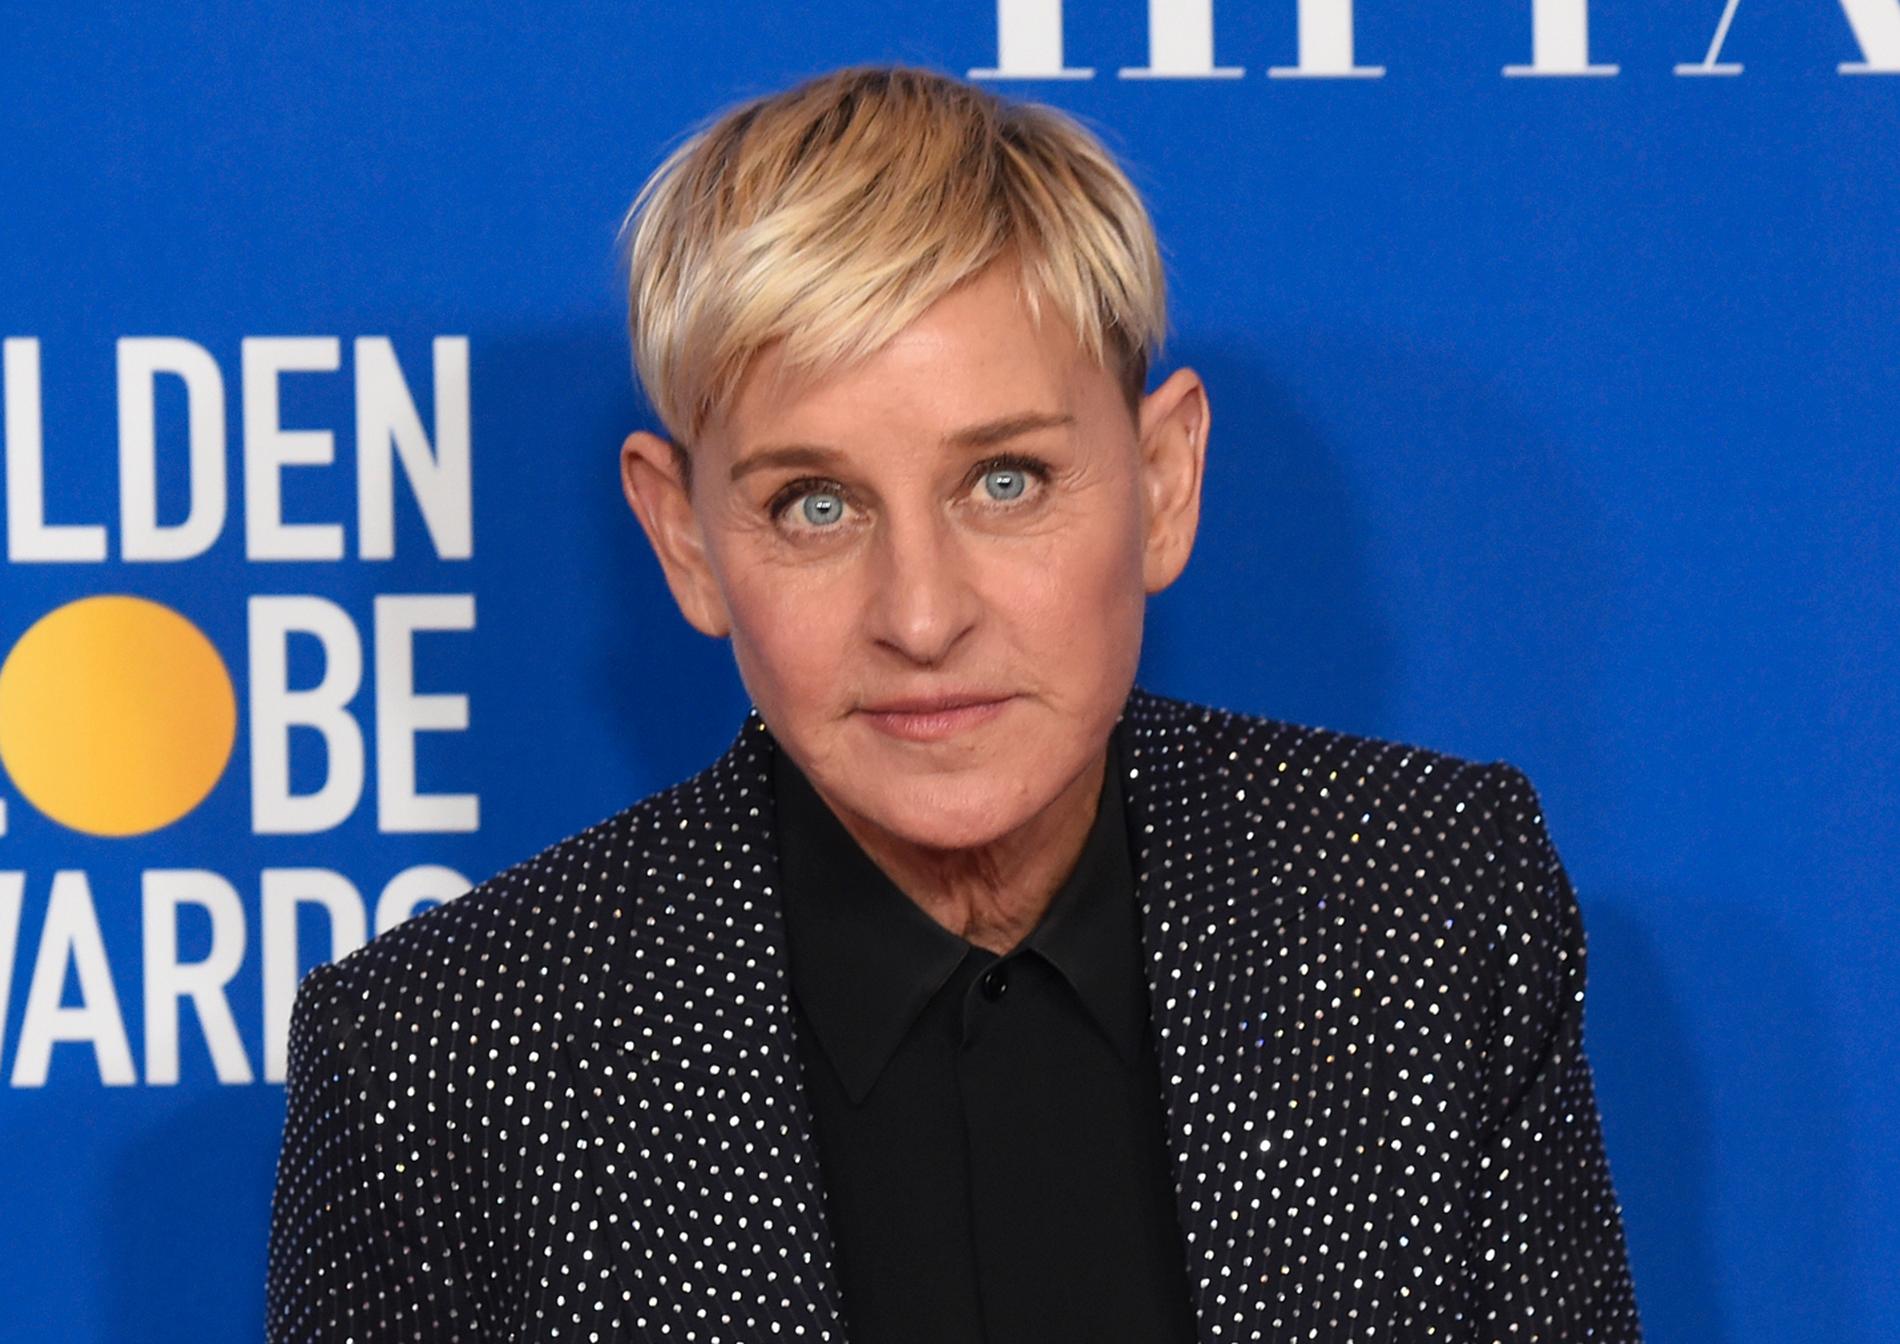 ”The Ellen DeGeneres show” lades ner i fjol efter att det framkommit uppgifter från anställda om missförhållanden.